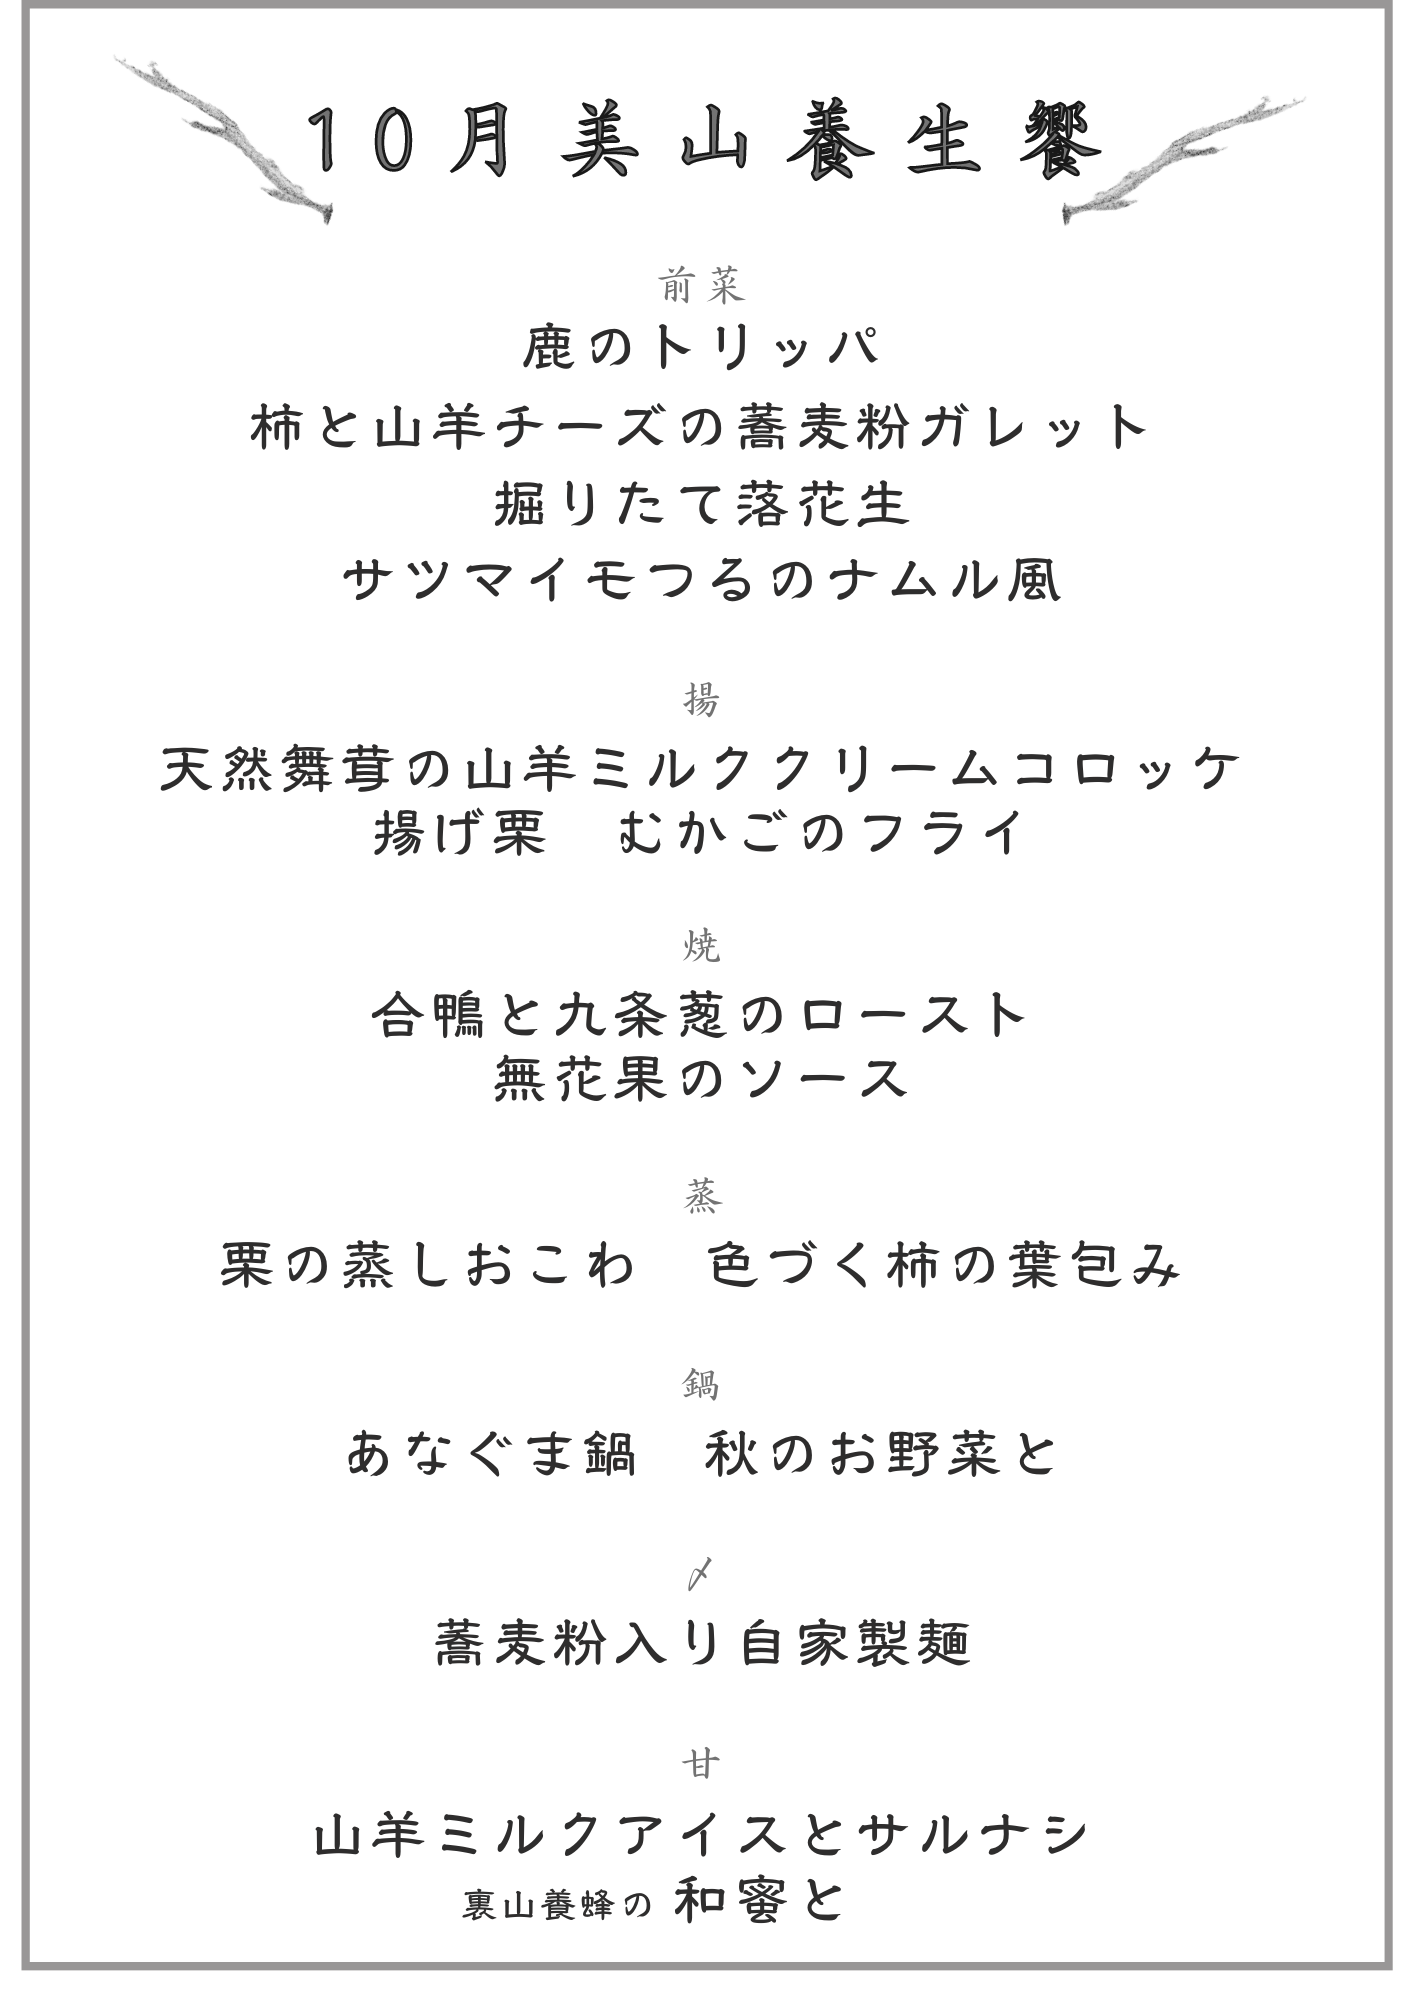 10-menu